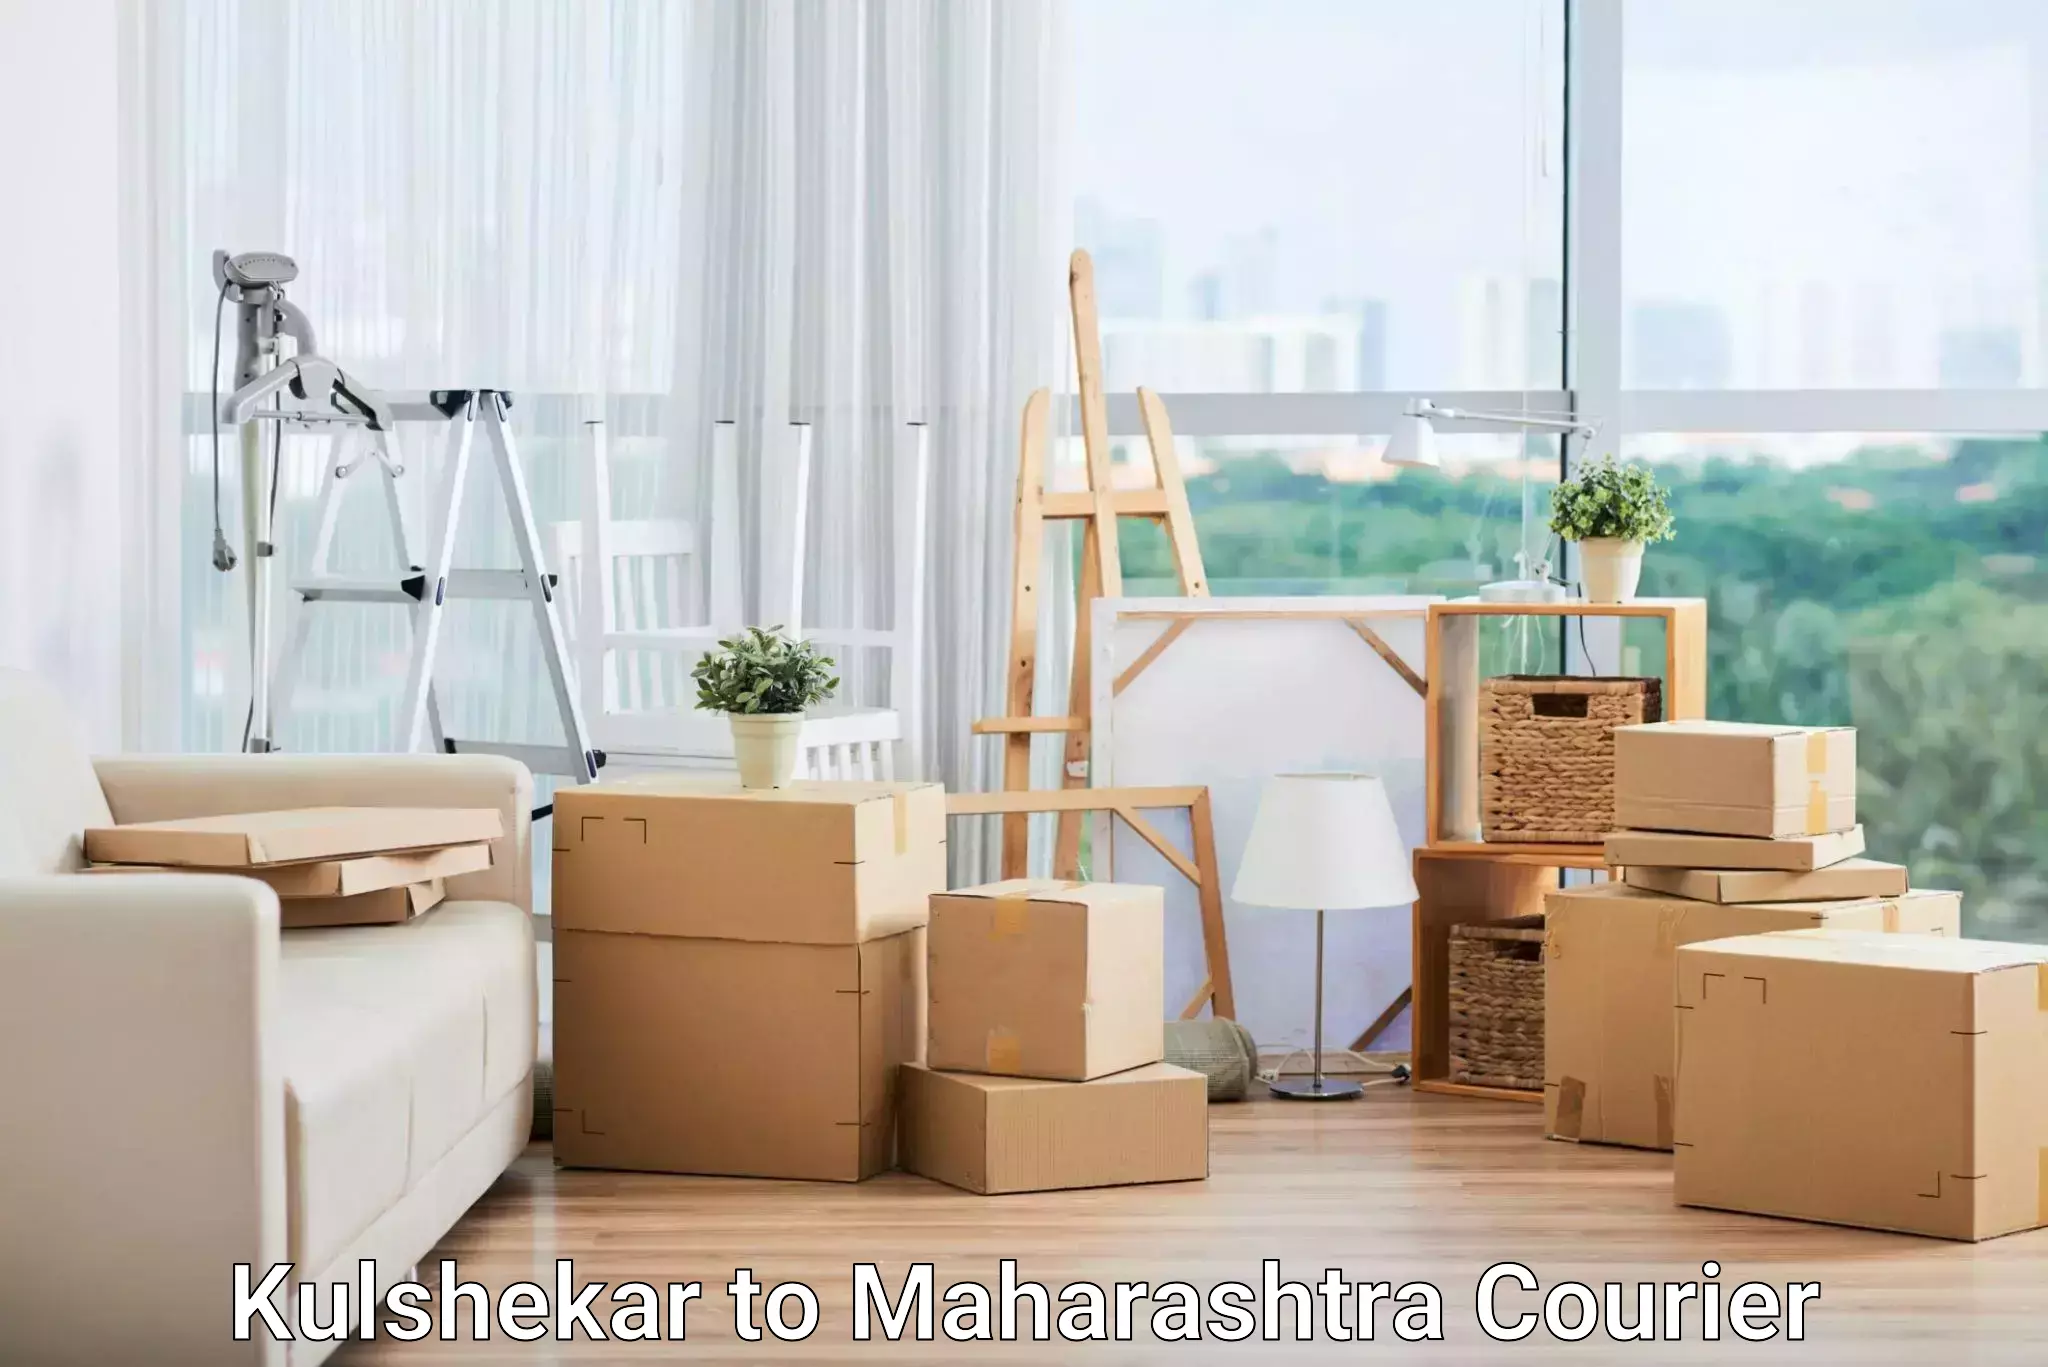 On-call courier service Kulshekar to Maharashtra